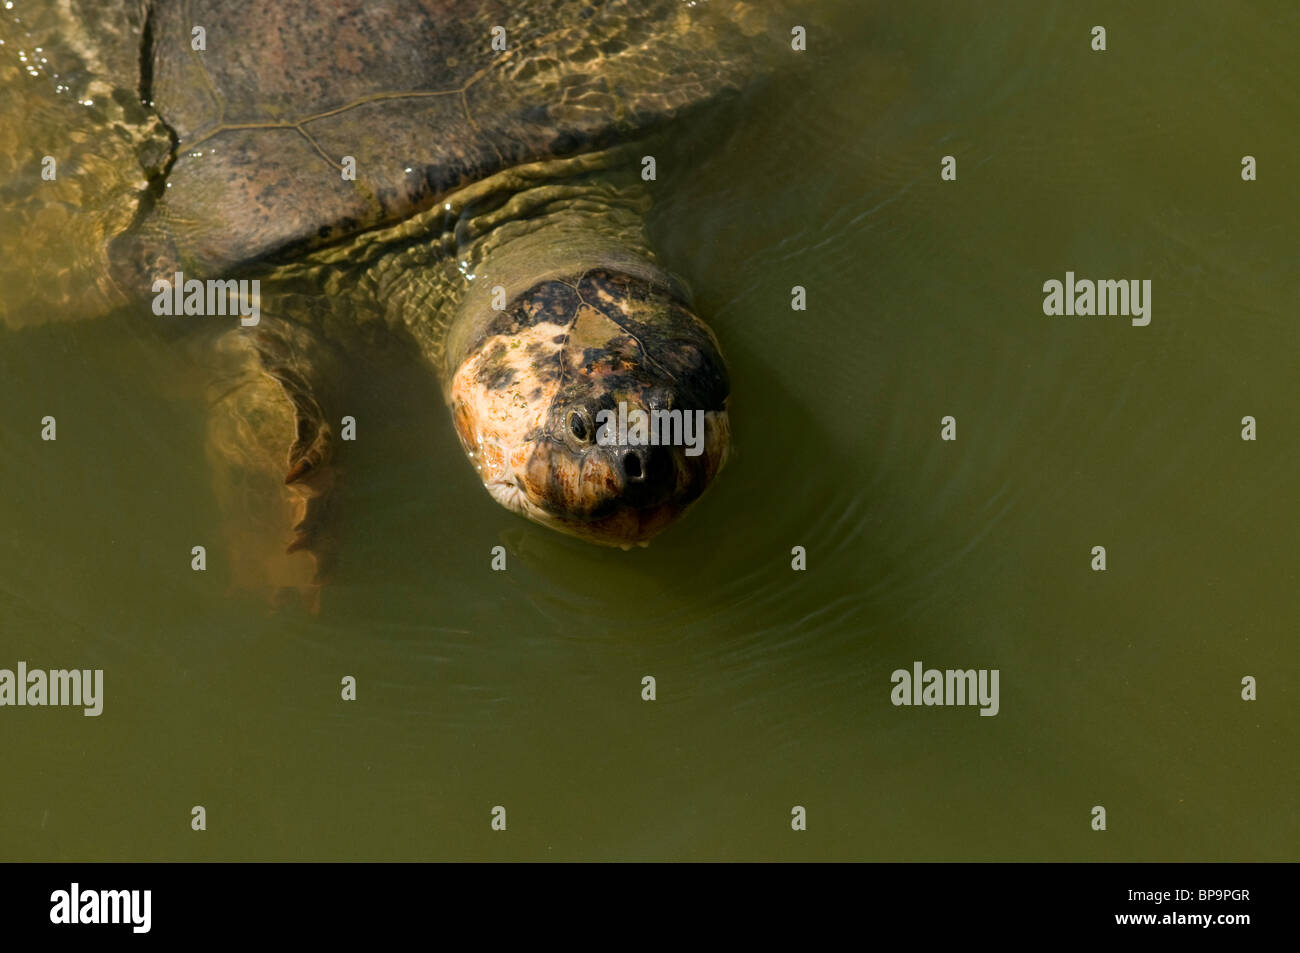 L'Amérique du Sud ou géant Amazon river turtle Podocnemis expansa Banque D'Images